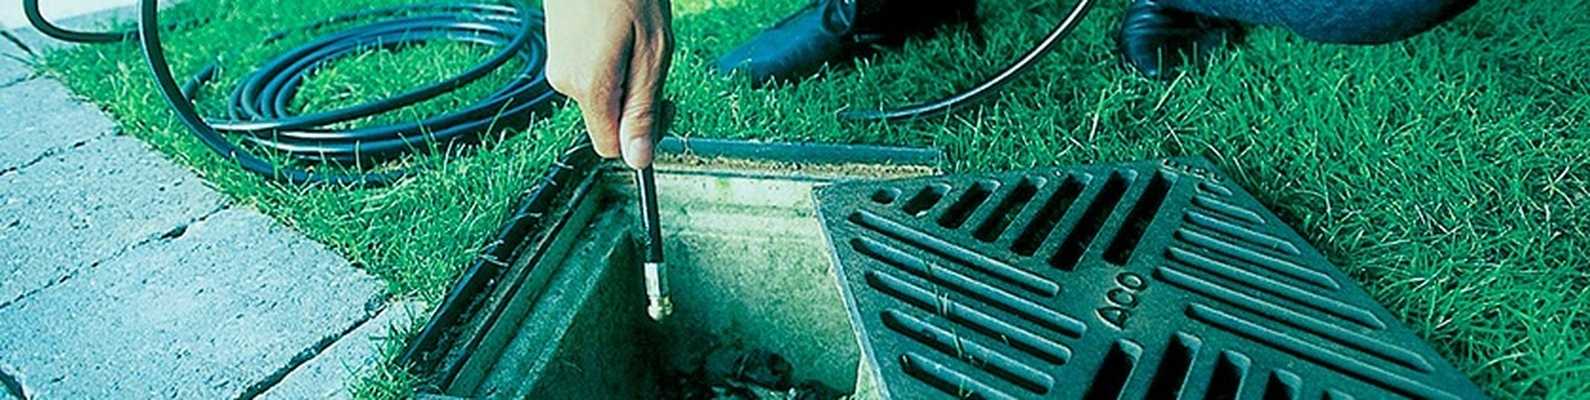 Технология прочистки ливневой канализации: обзор способов | отделка в доме